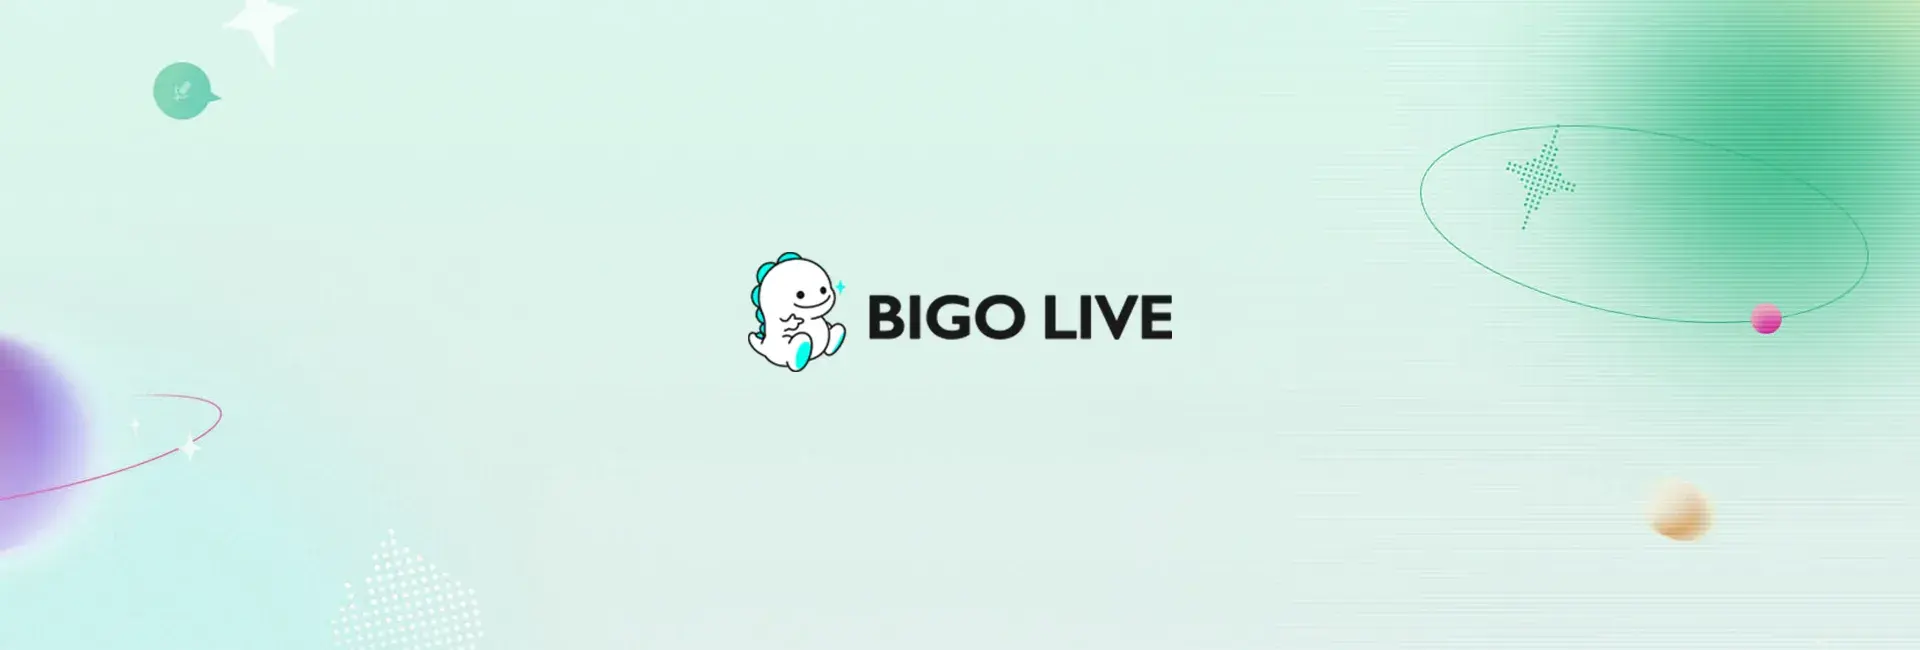 Bigo Live - 23700 Diamonds (Global)